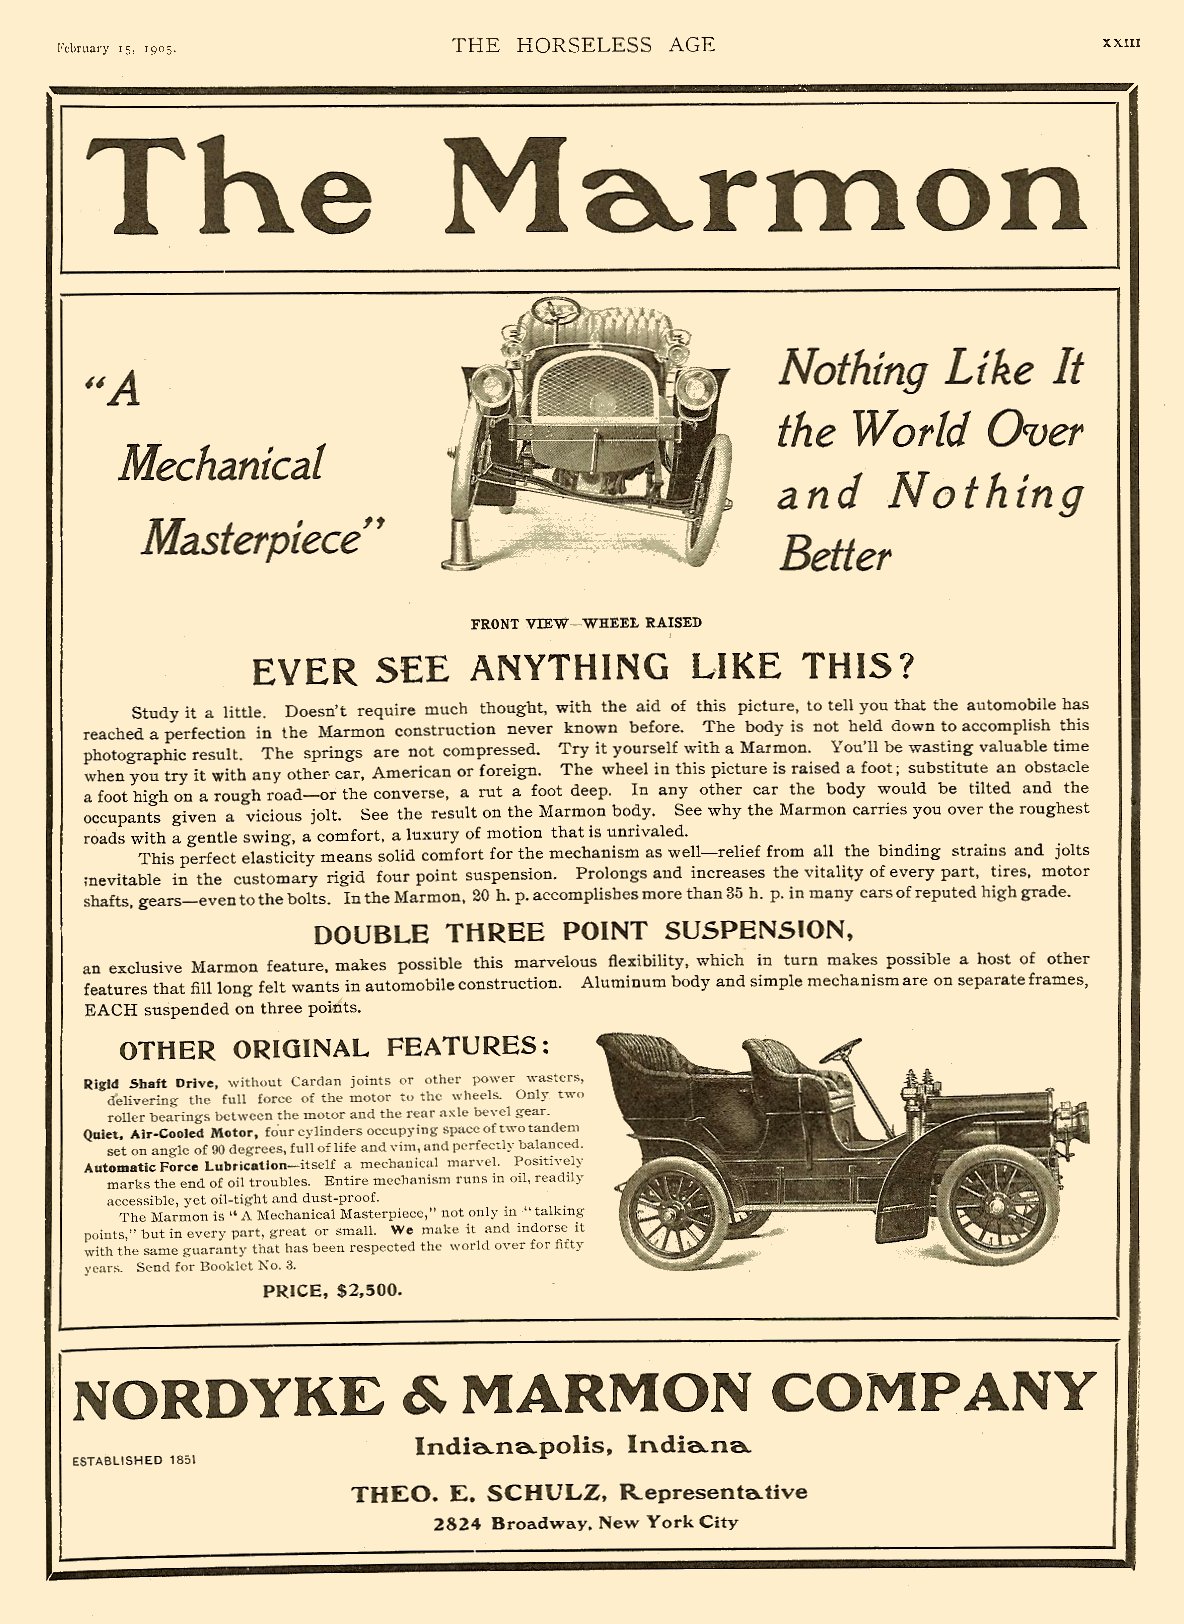 1905 Marmon Auto Advertising